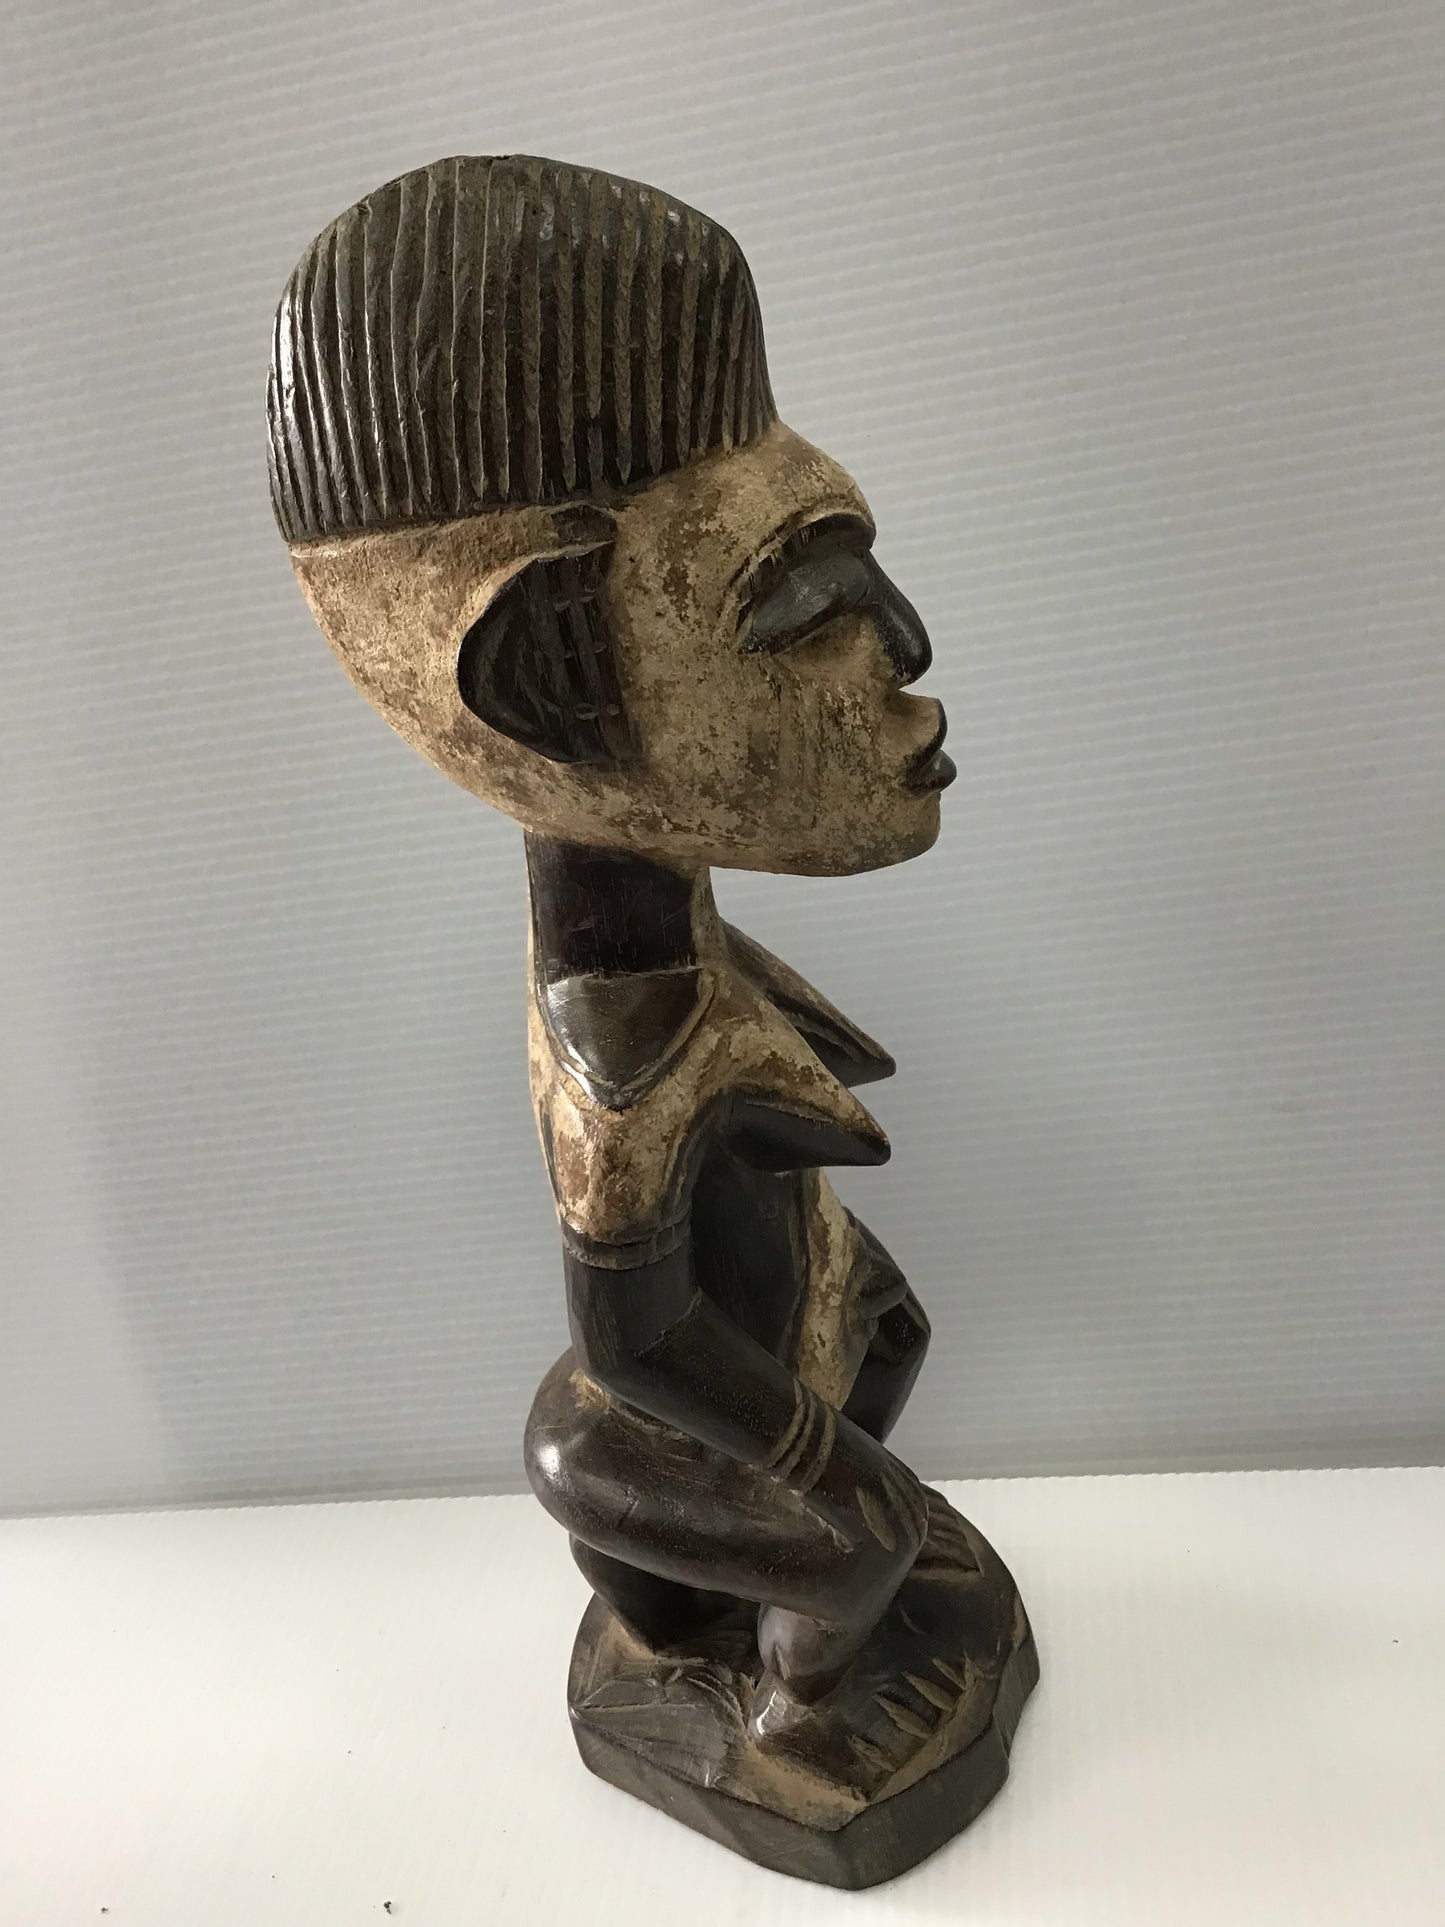 Idoma Goddess Sculpture